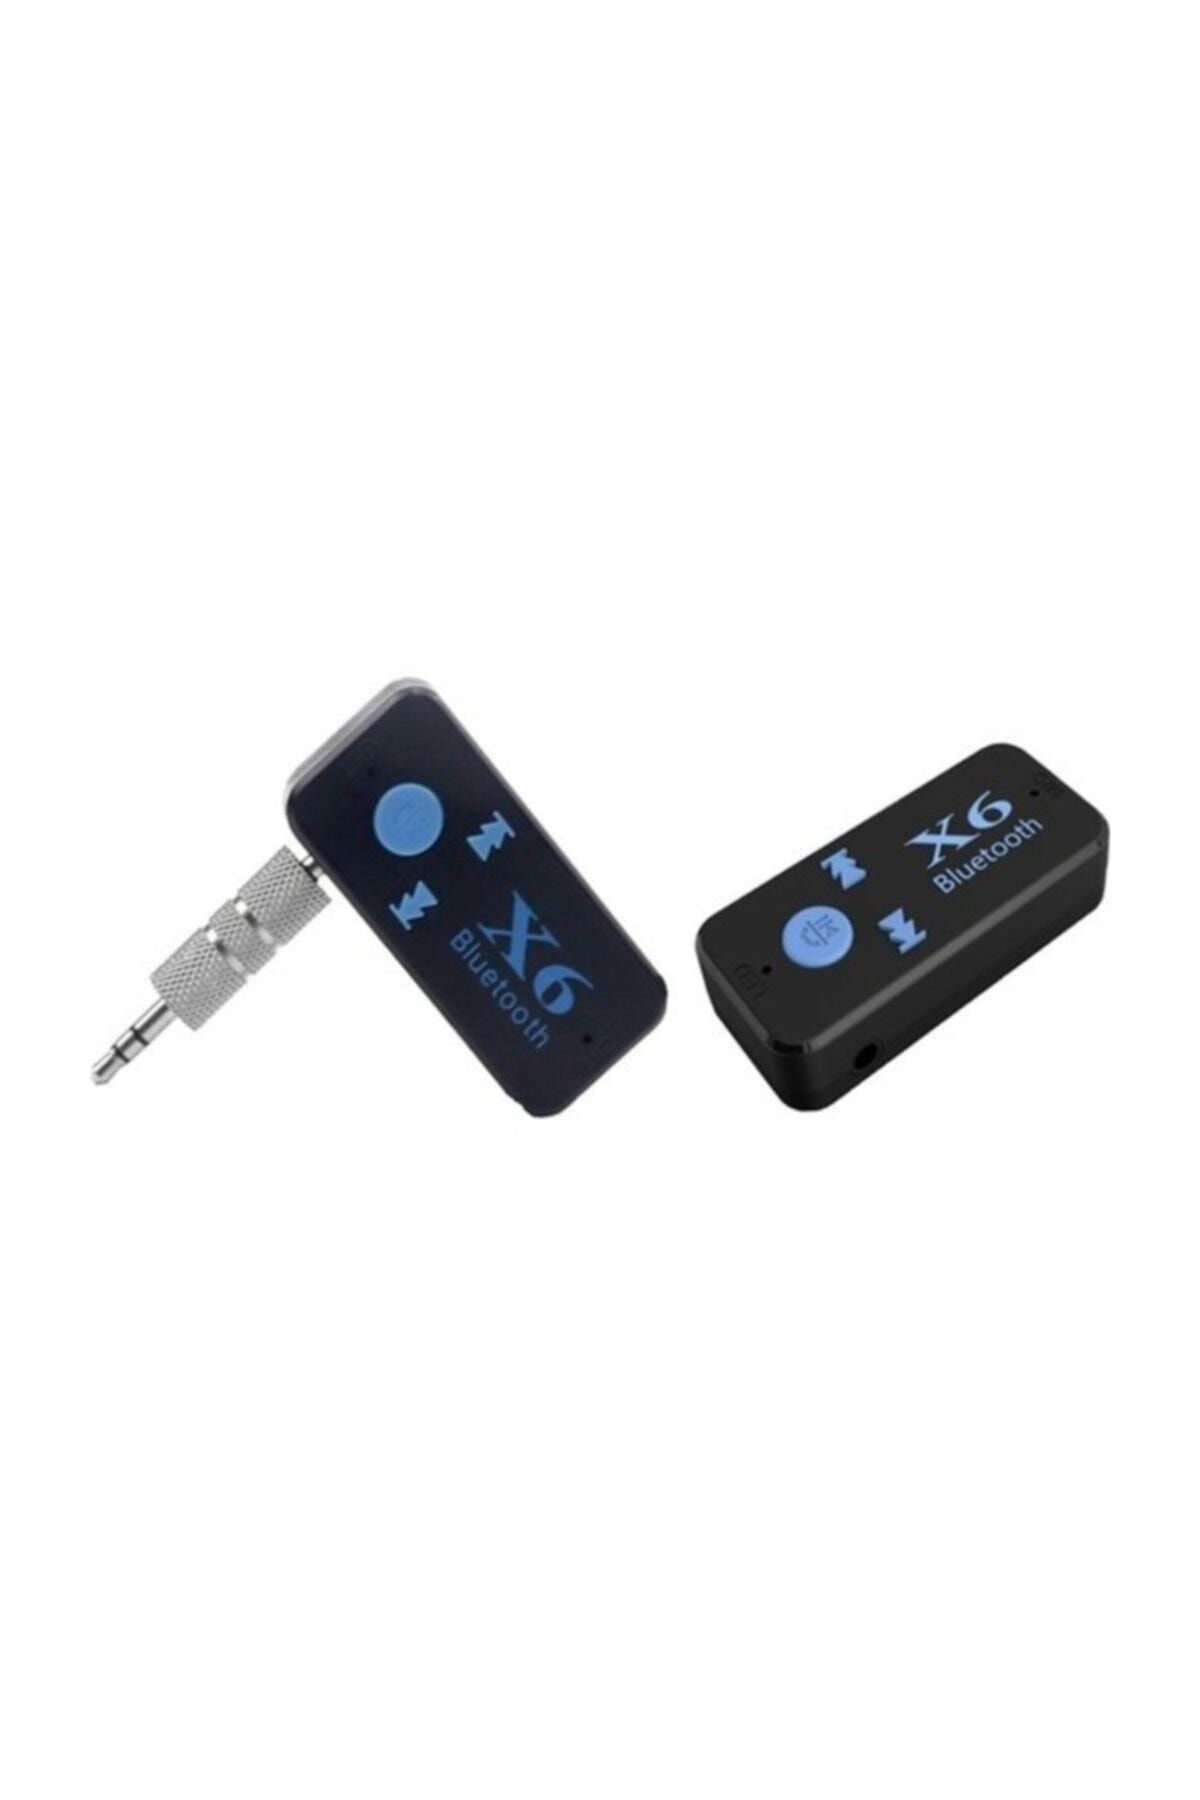 Metus Bluetooth Müzik Alıcısı 3.5 Mm Aux Adaptör Araç Kiti 3in1 - Cyber An-6999 X6